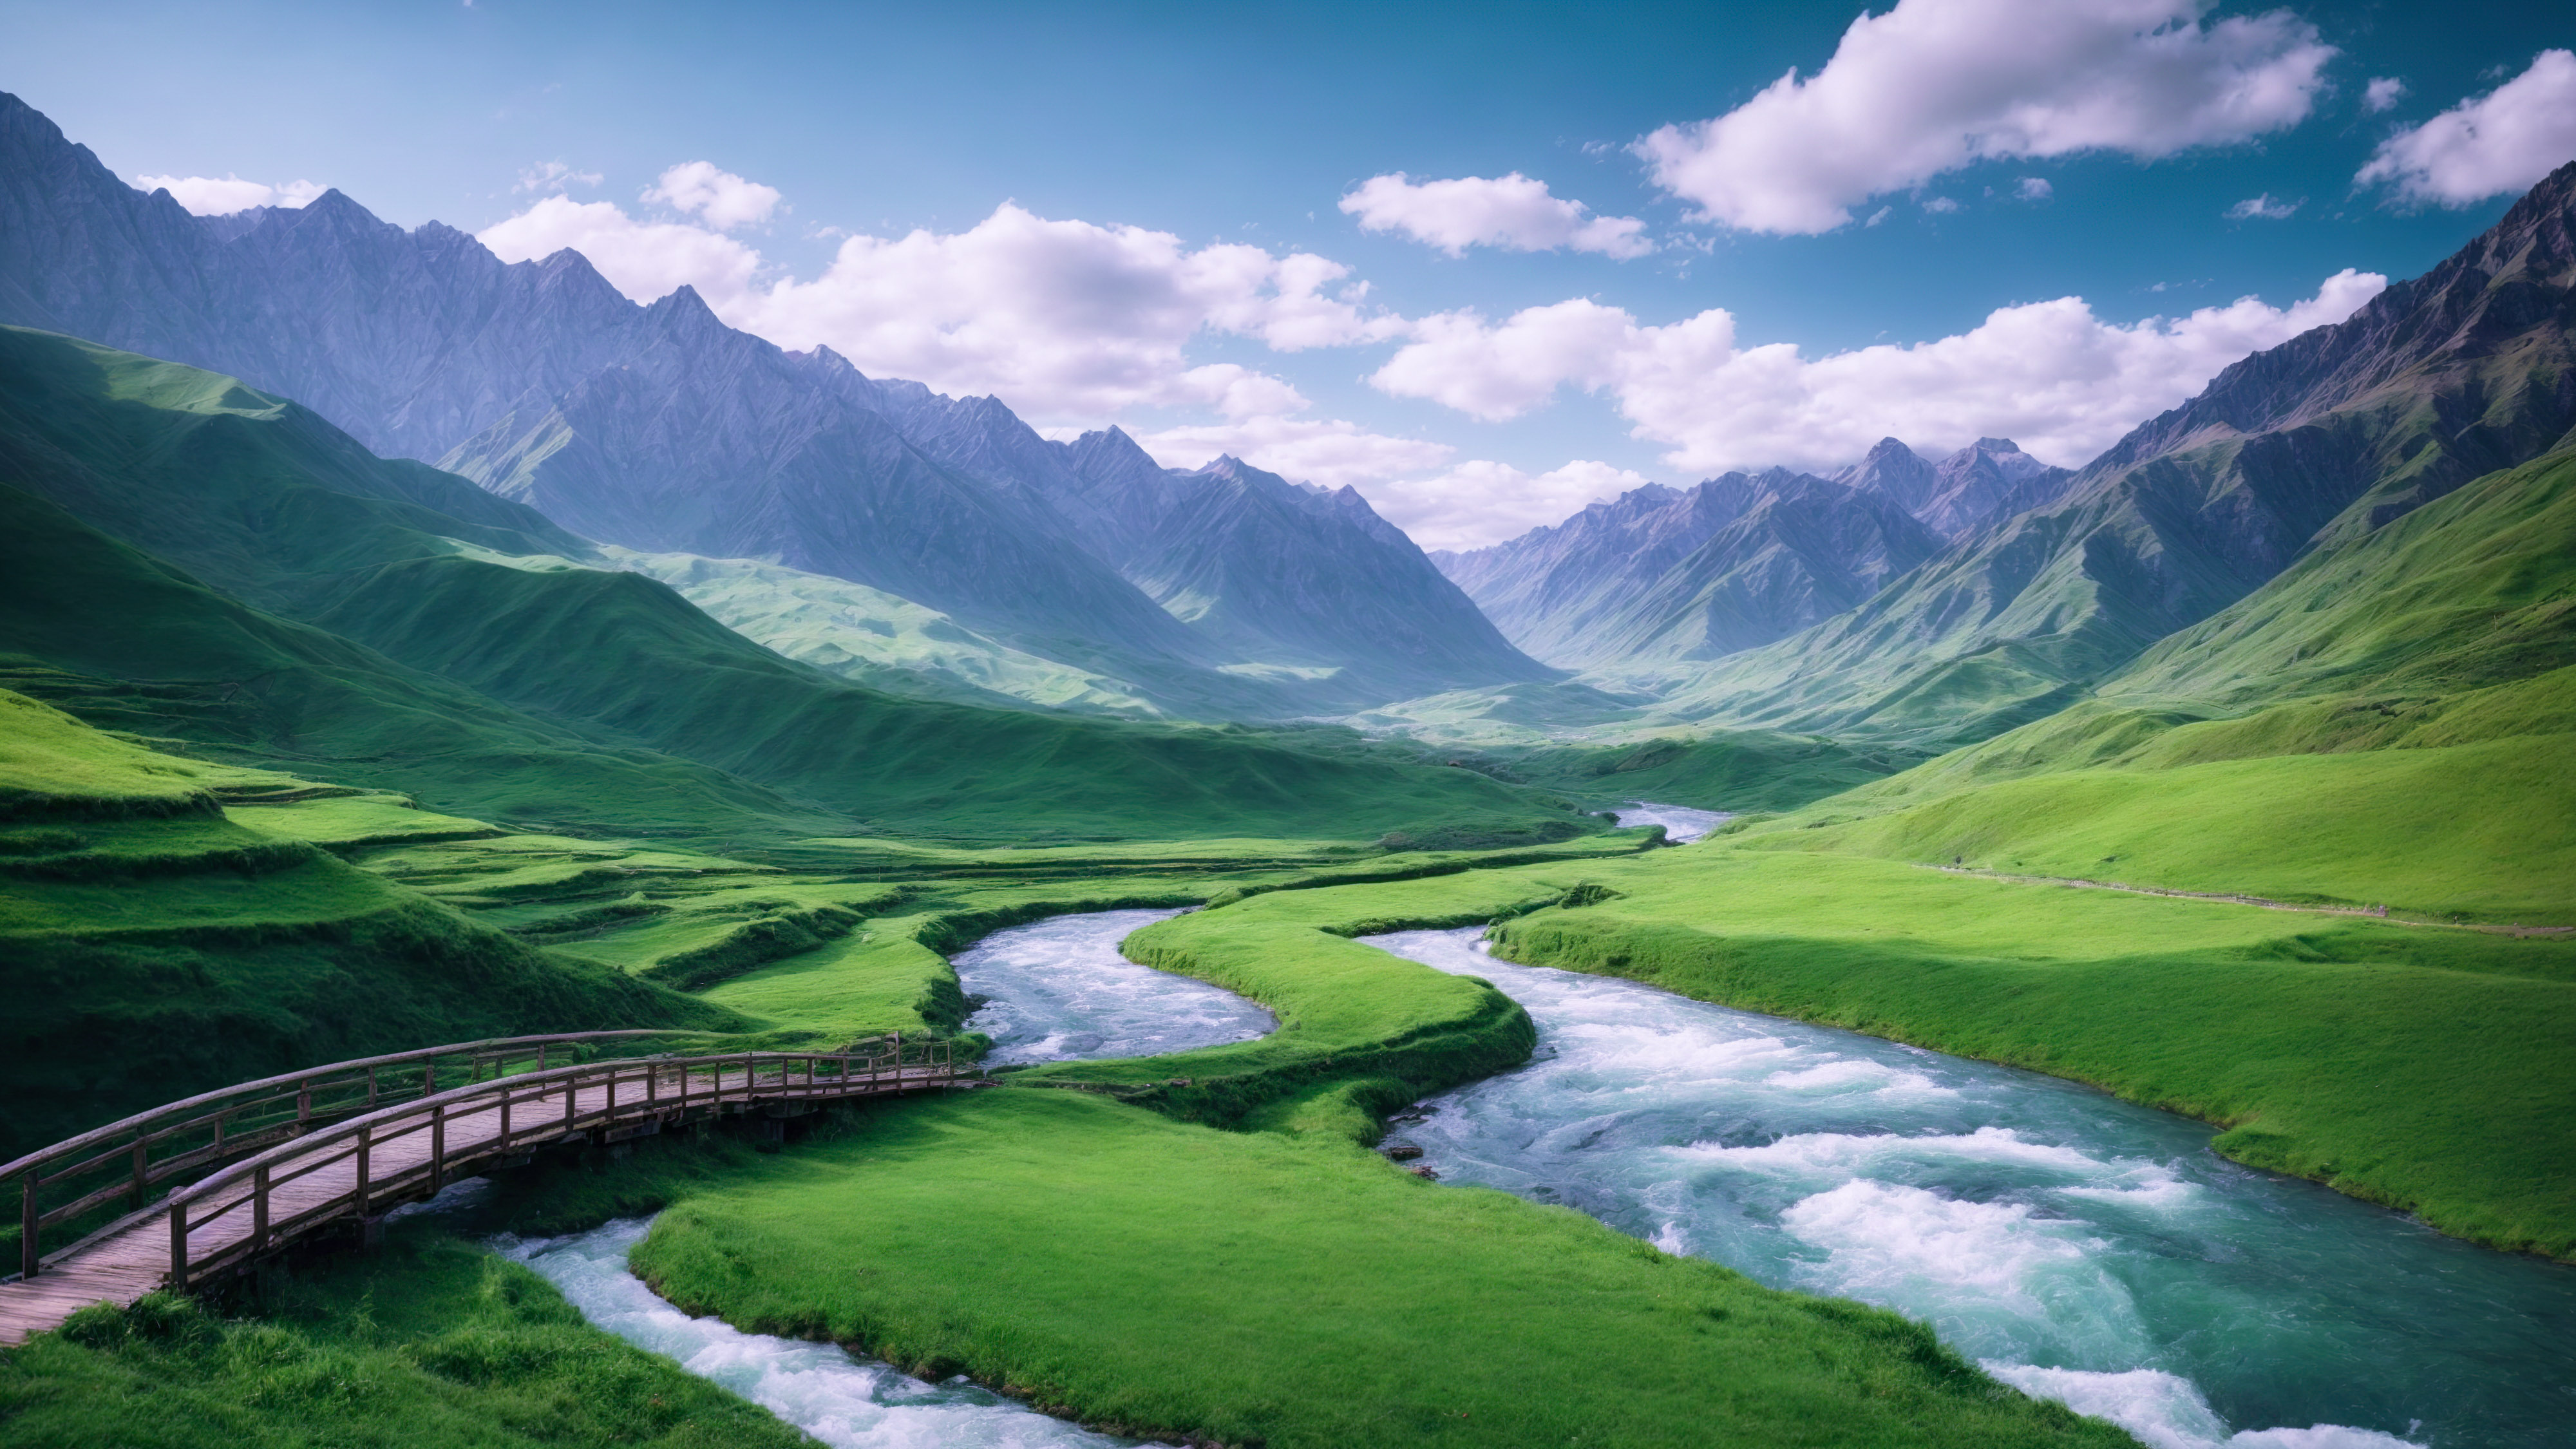 Immergez-vous dans la sérénité d'une vallée verte entourée de montagnes majestueuses, avec une rivière sinueuse et un pont en bois, à travers notre fond d'écran de paysage.